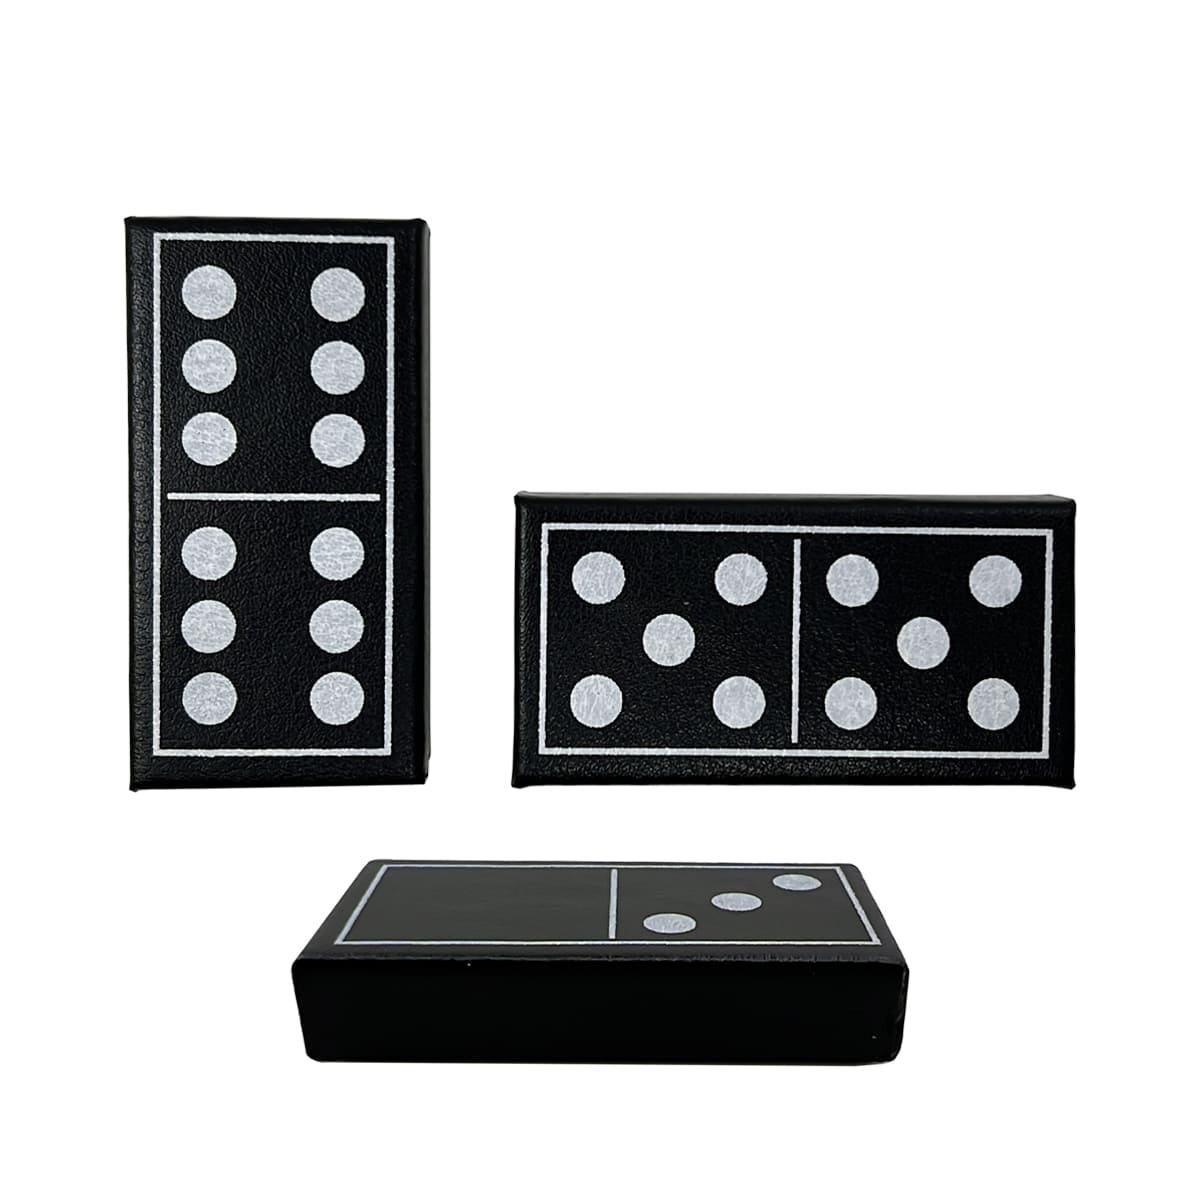 Lüks Domino Setleri Çift Altılı Standart 28 Fayans Siyah Deri Kılıflı